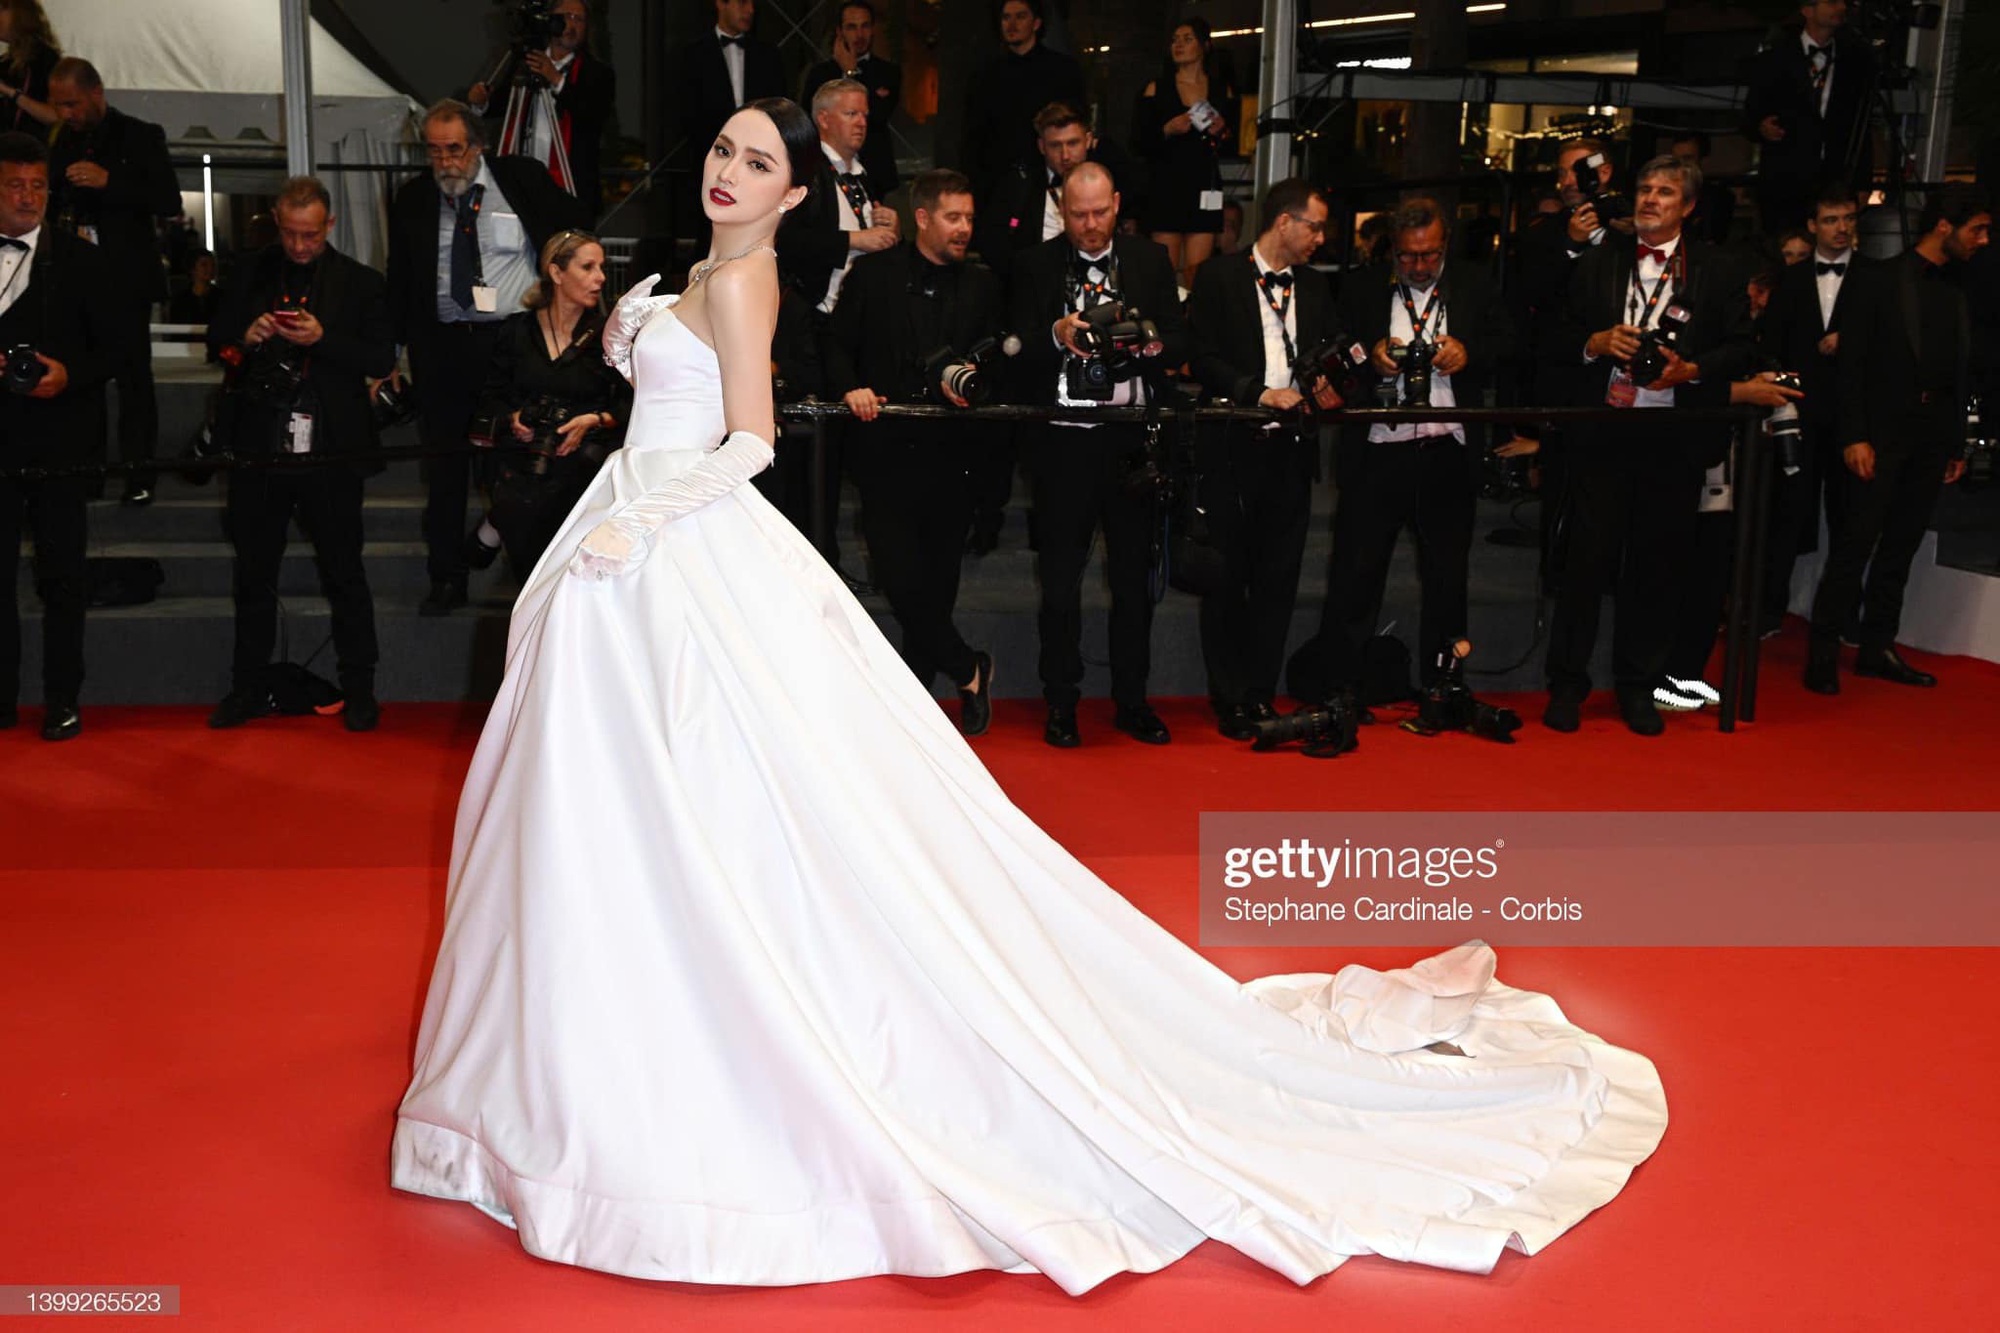 Hương Giang diện váy như cô dâu, bất ngờ xuất hiện trên thảm đỏ Cannes - Ảnh 3.